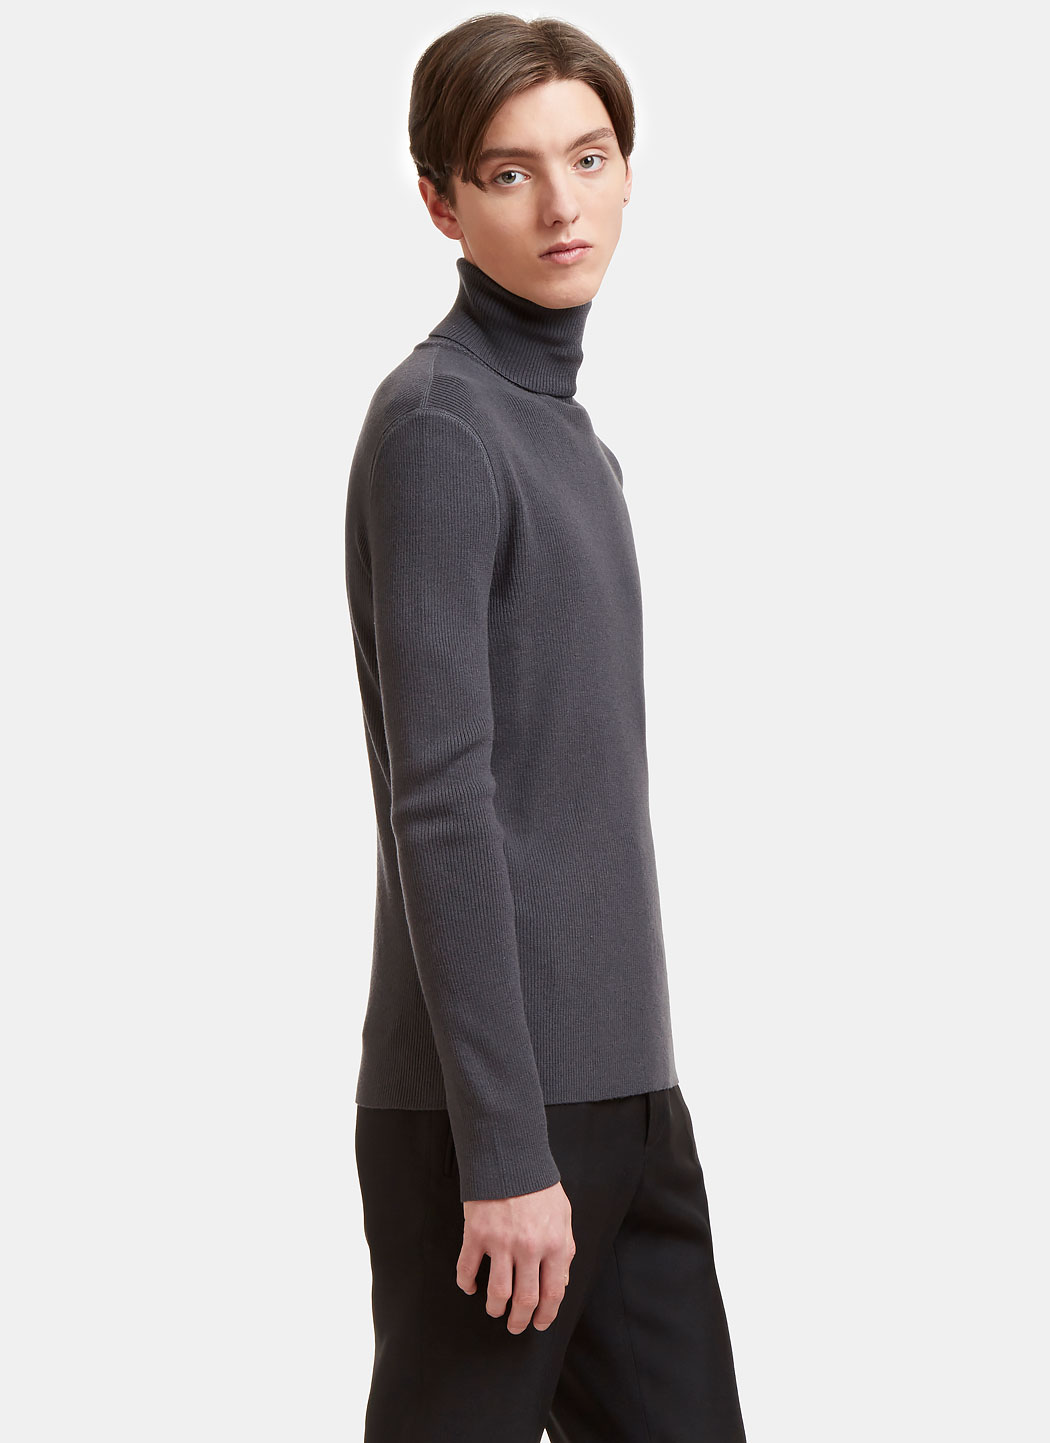 Aiezen Men's Wool-Blend Turtleneck Sweater in Grey | LN-CC